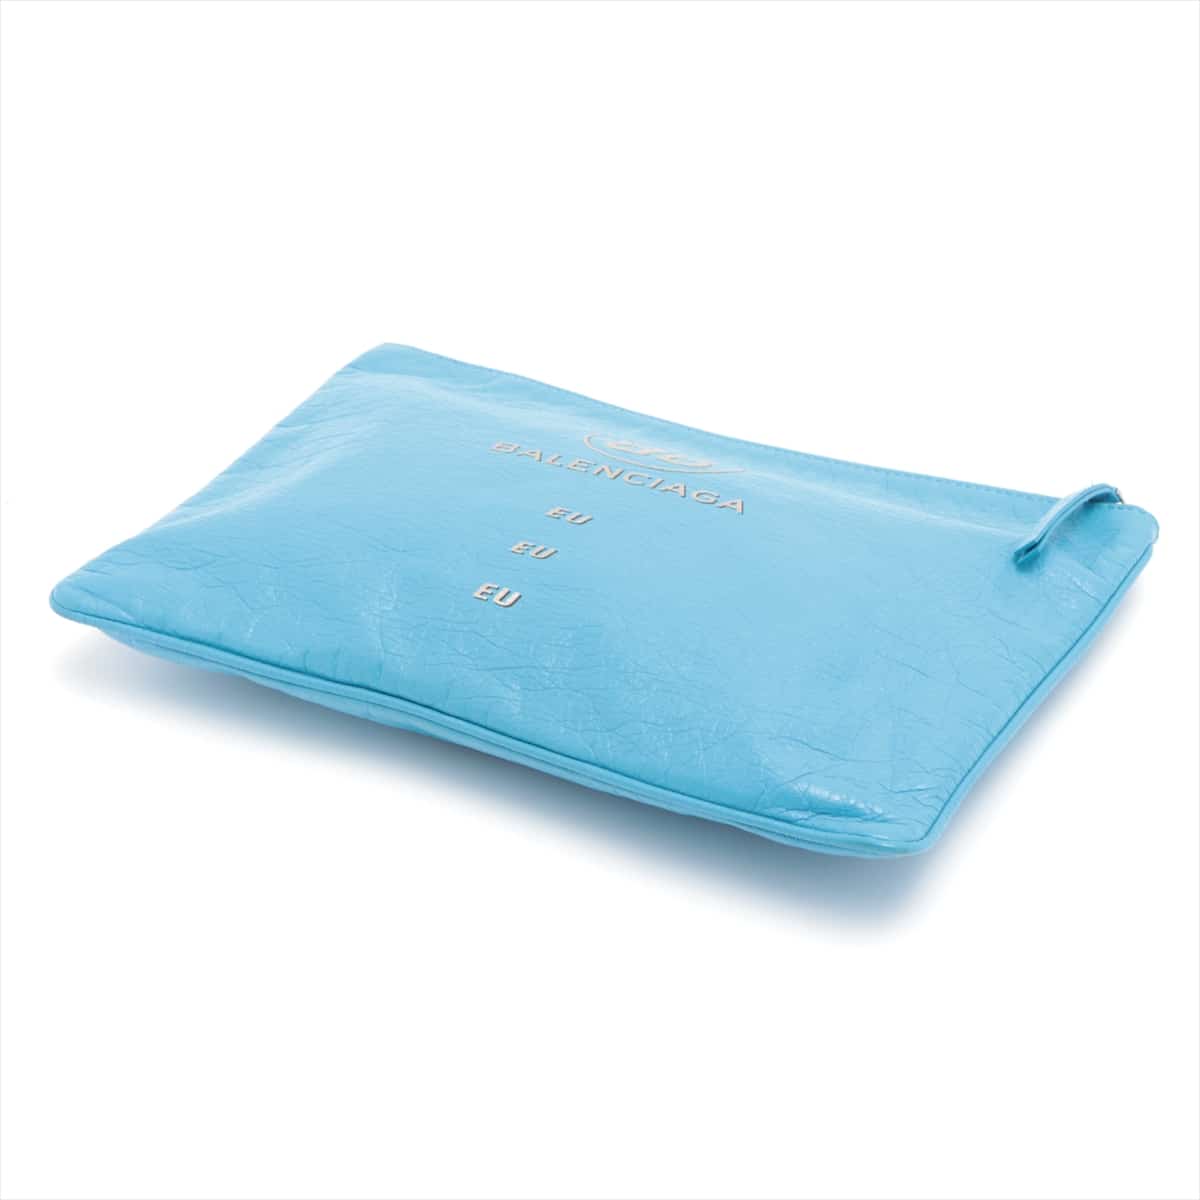 Balenciaga Leather Clutch bag Blue 506794